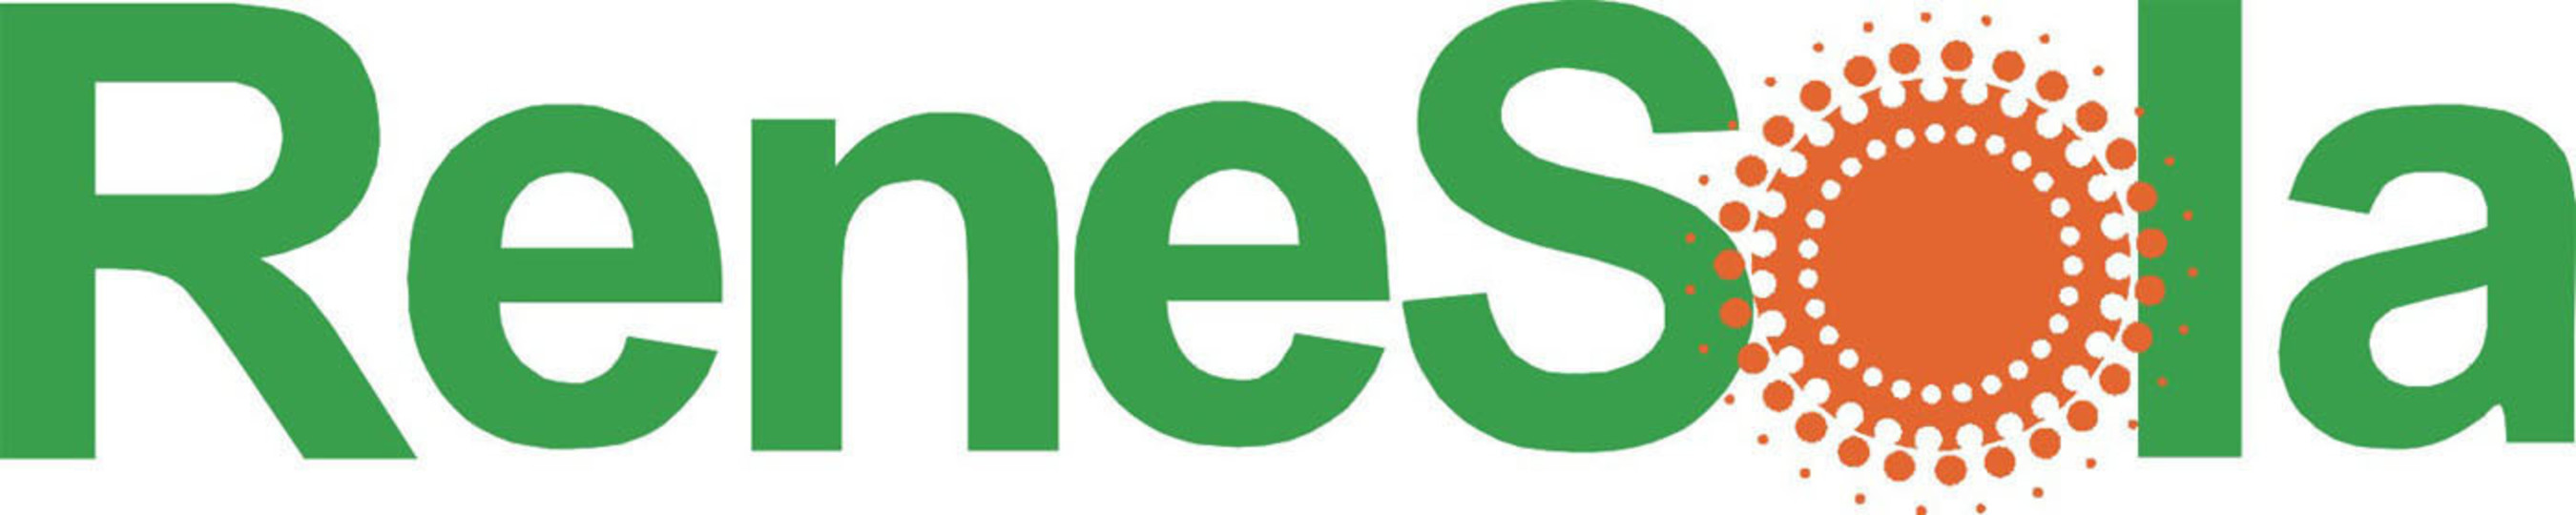 ReneSola Logo.